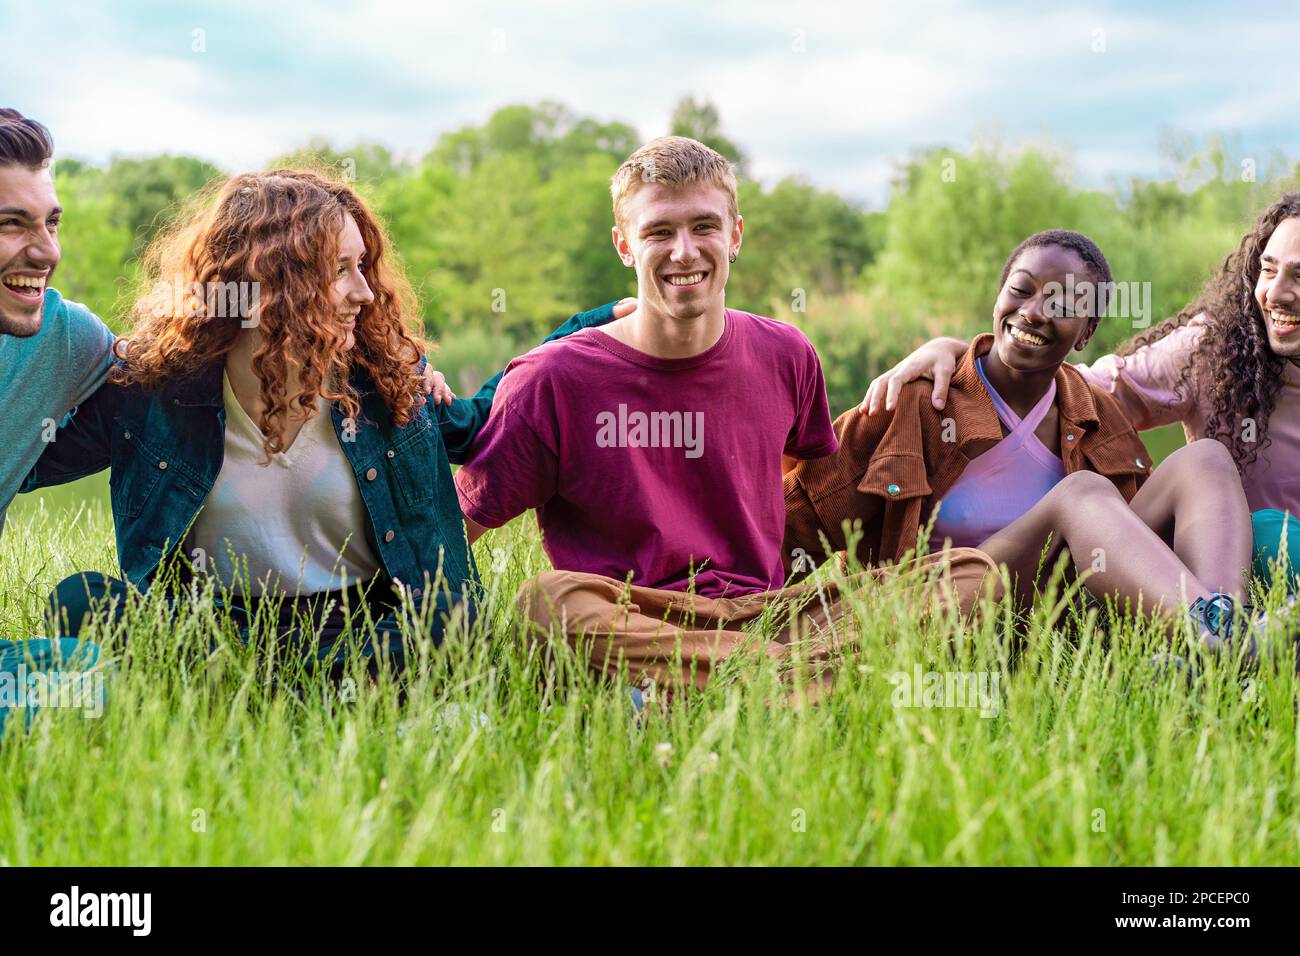 Un gruppo diversificato di amici abbraccia e sorride felicemente mentre si siede sull'erba in un parco - vita all'aperto, amicizia, integrazione razziale, fiducia e ca Foto Stock